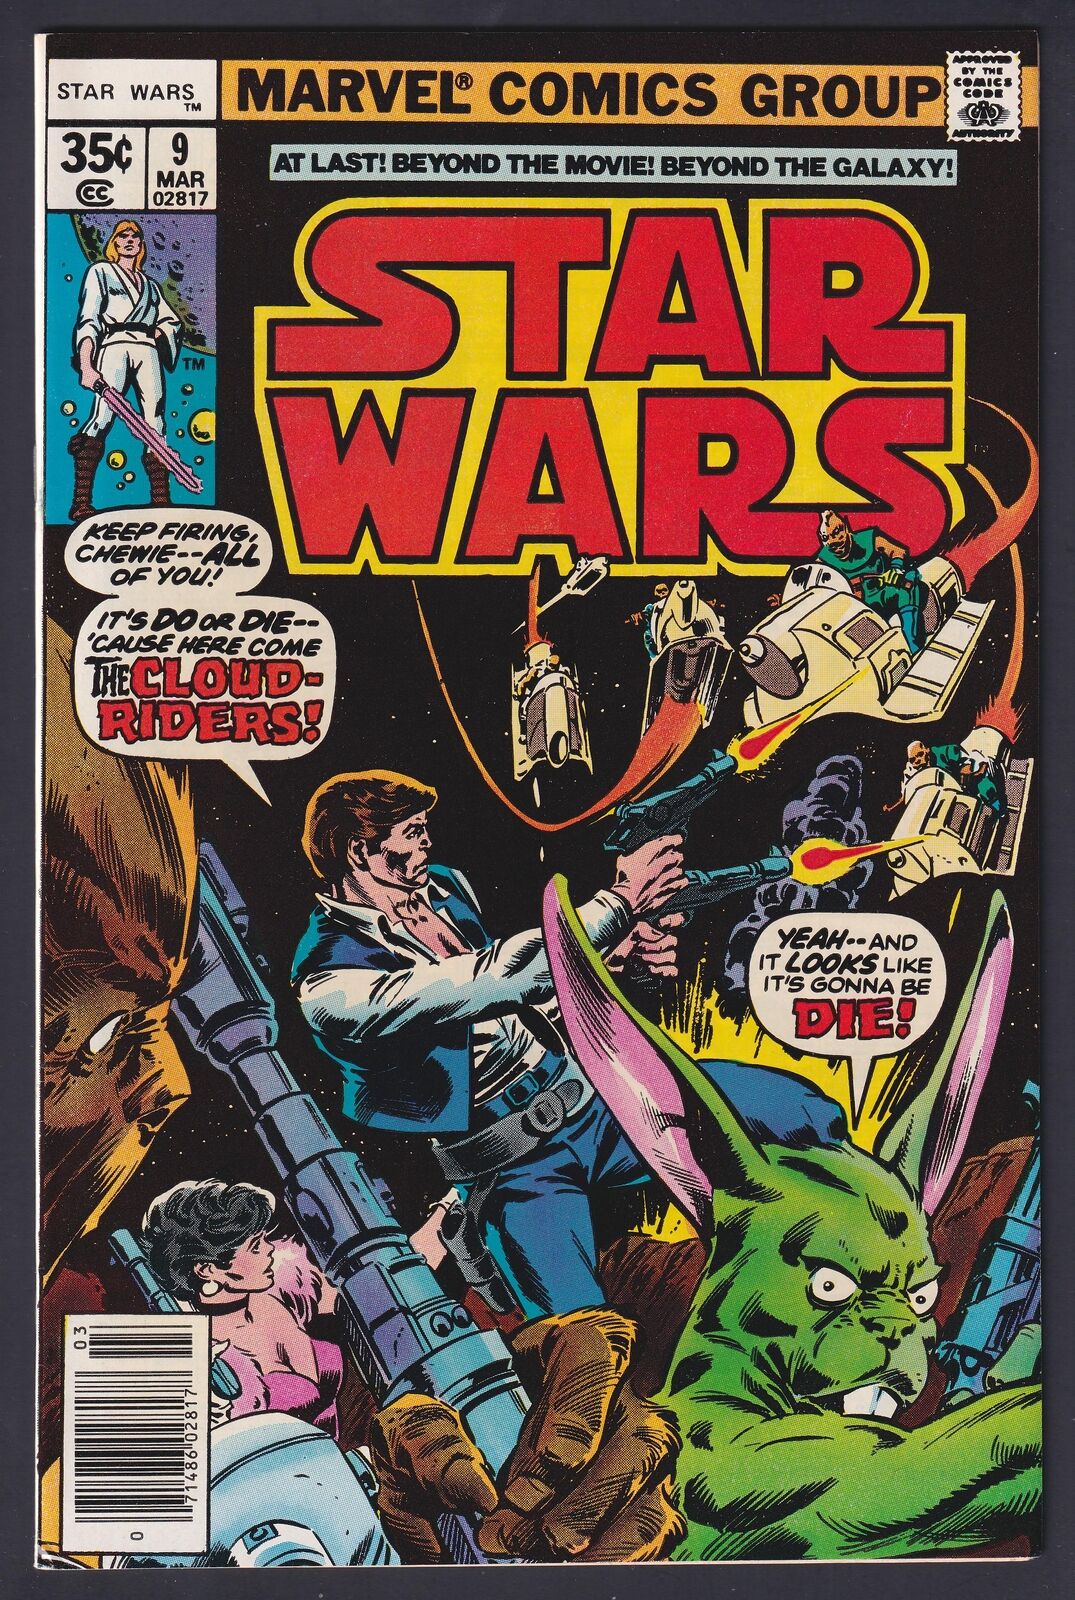 Star Wars #9 1977 Marvel 9.0 Very Fine/Near Mint comic